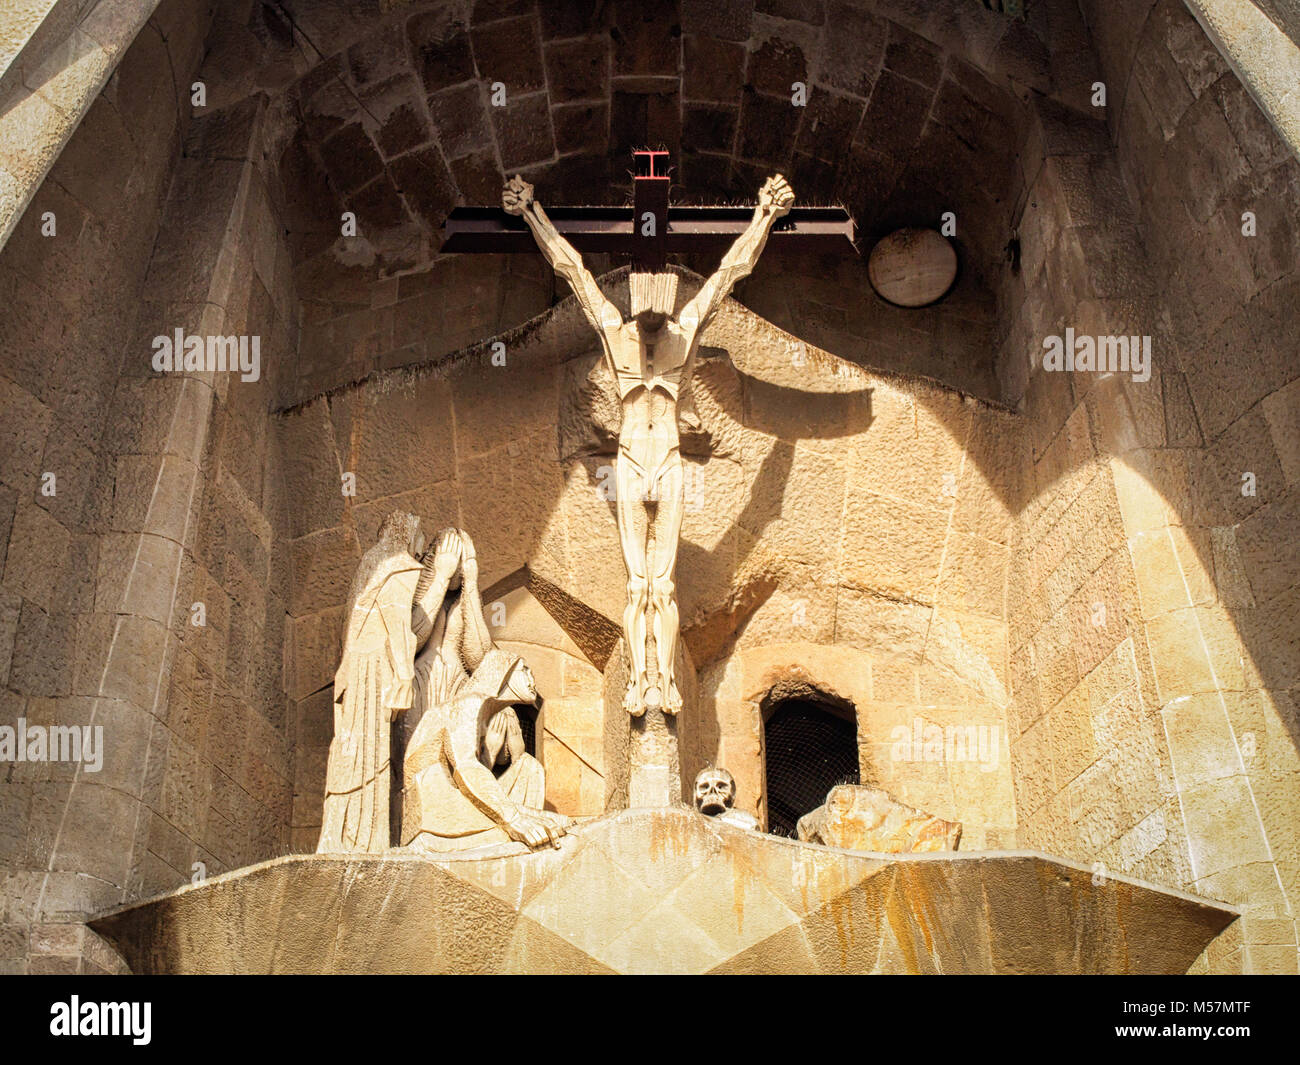 Barcellona, Spagna-febbraio 16, 2018: Crocifisso come un frammento architettonico della Sagrada Familia - cattedrale progettata da Gaudi Foto Stock